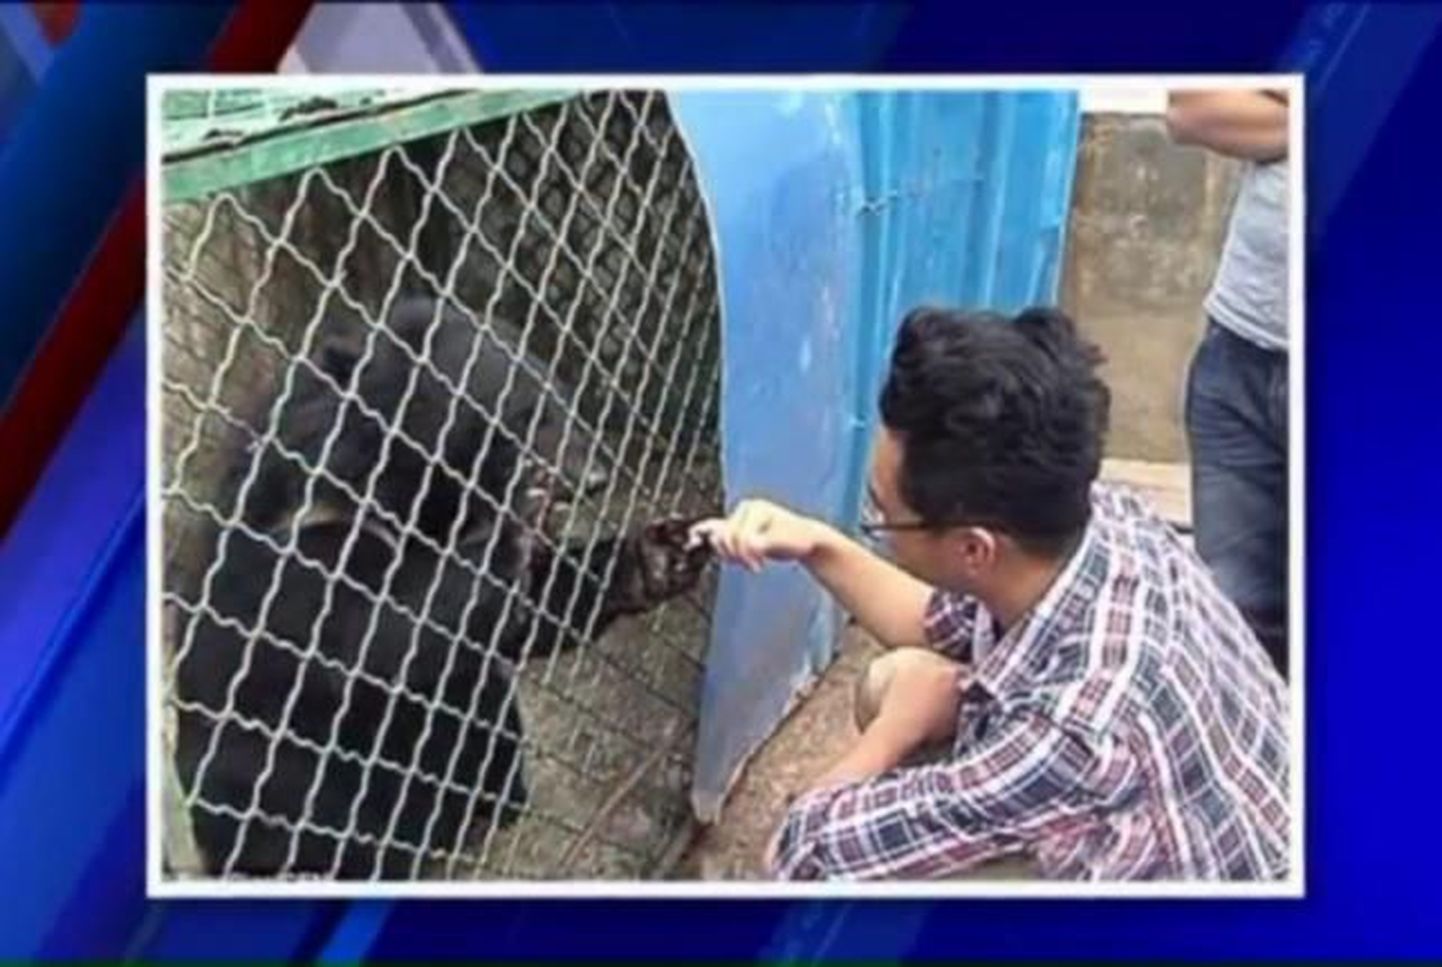 Hiinlane, kes ostis enda teada kaks koerakutsikat, avastas lõpuks, et tegelikult olid tema lemmikloomadeks olnud ohustatud liigist aasia musta karu pojad